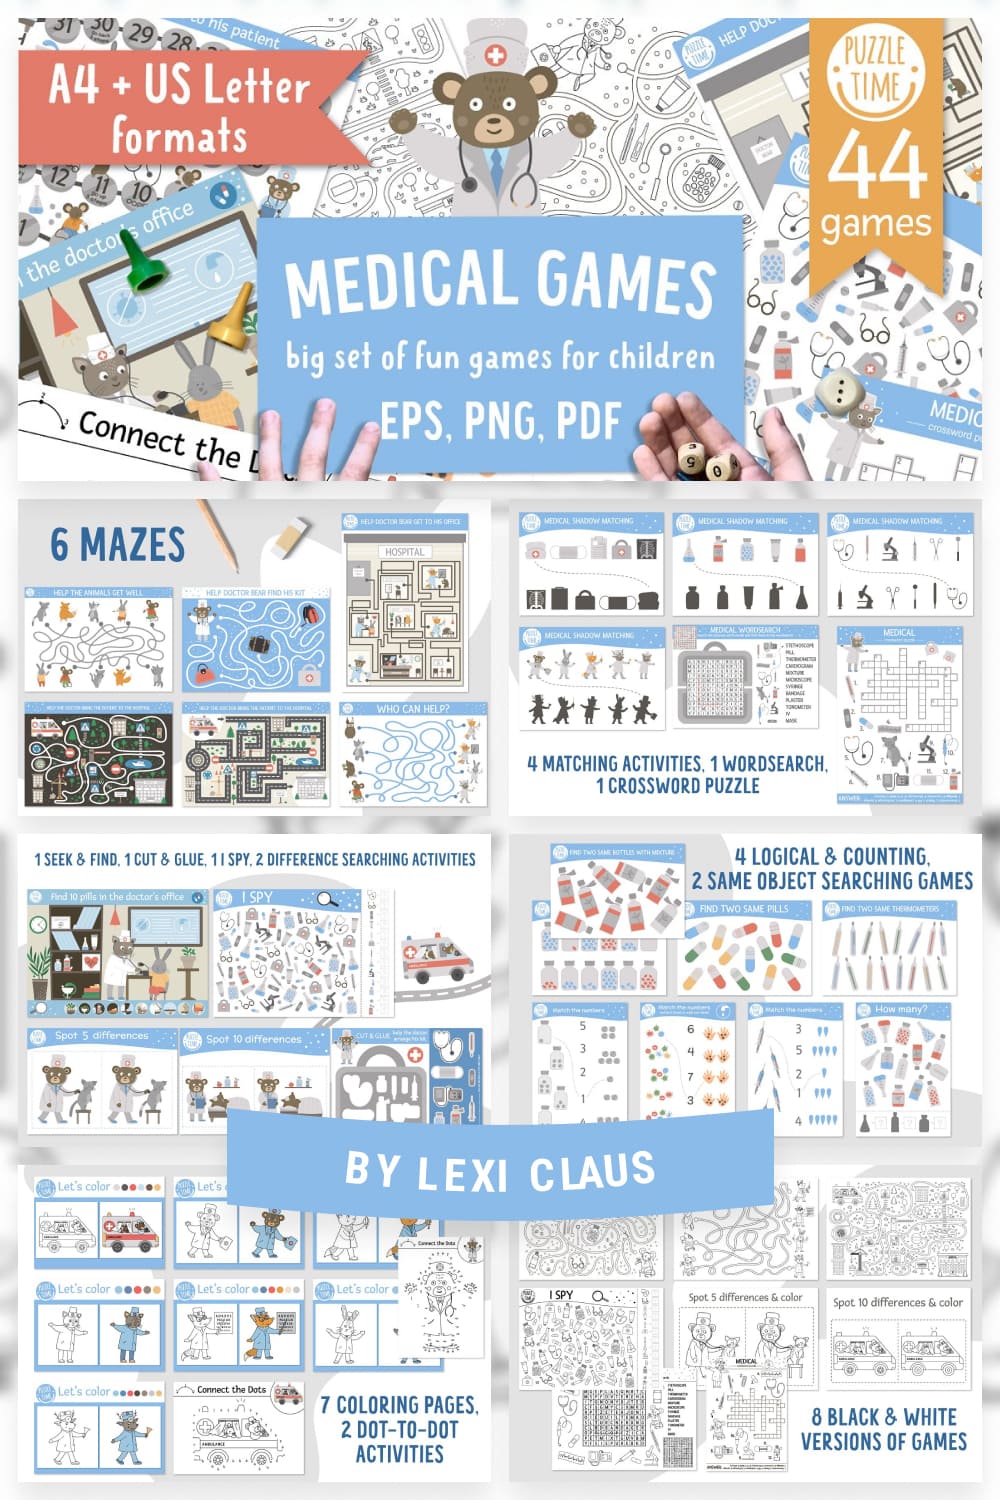 medical games pinterest image.